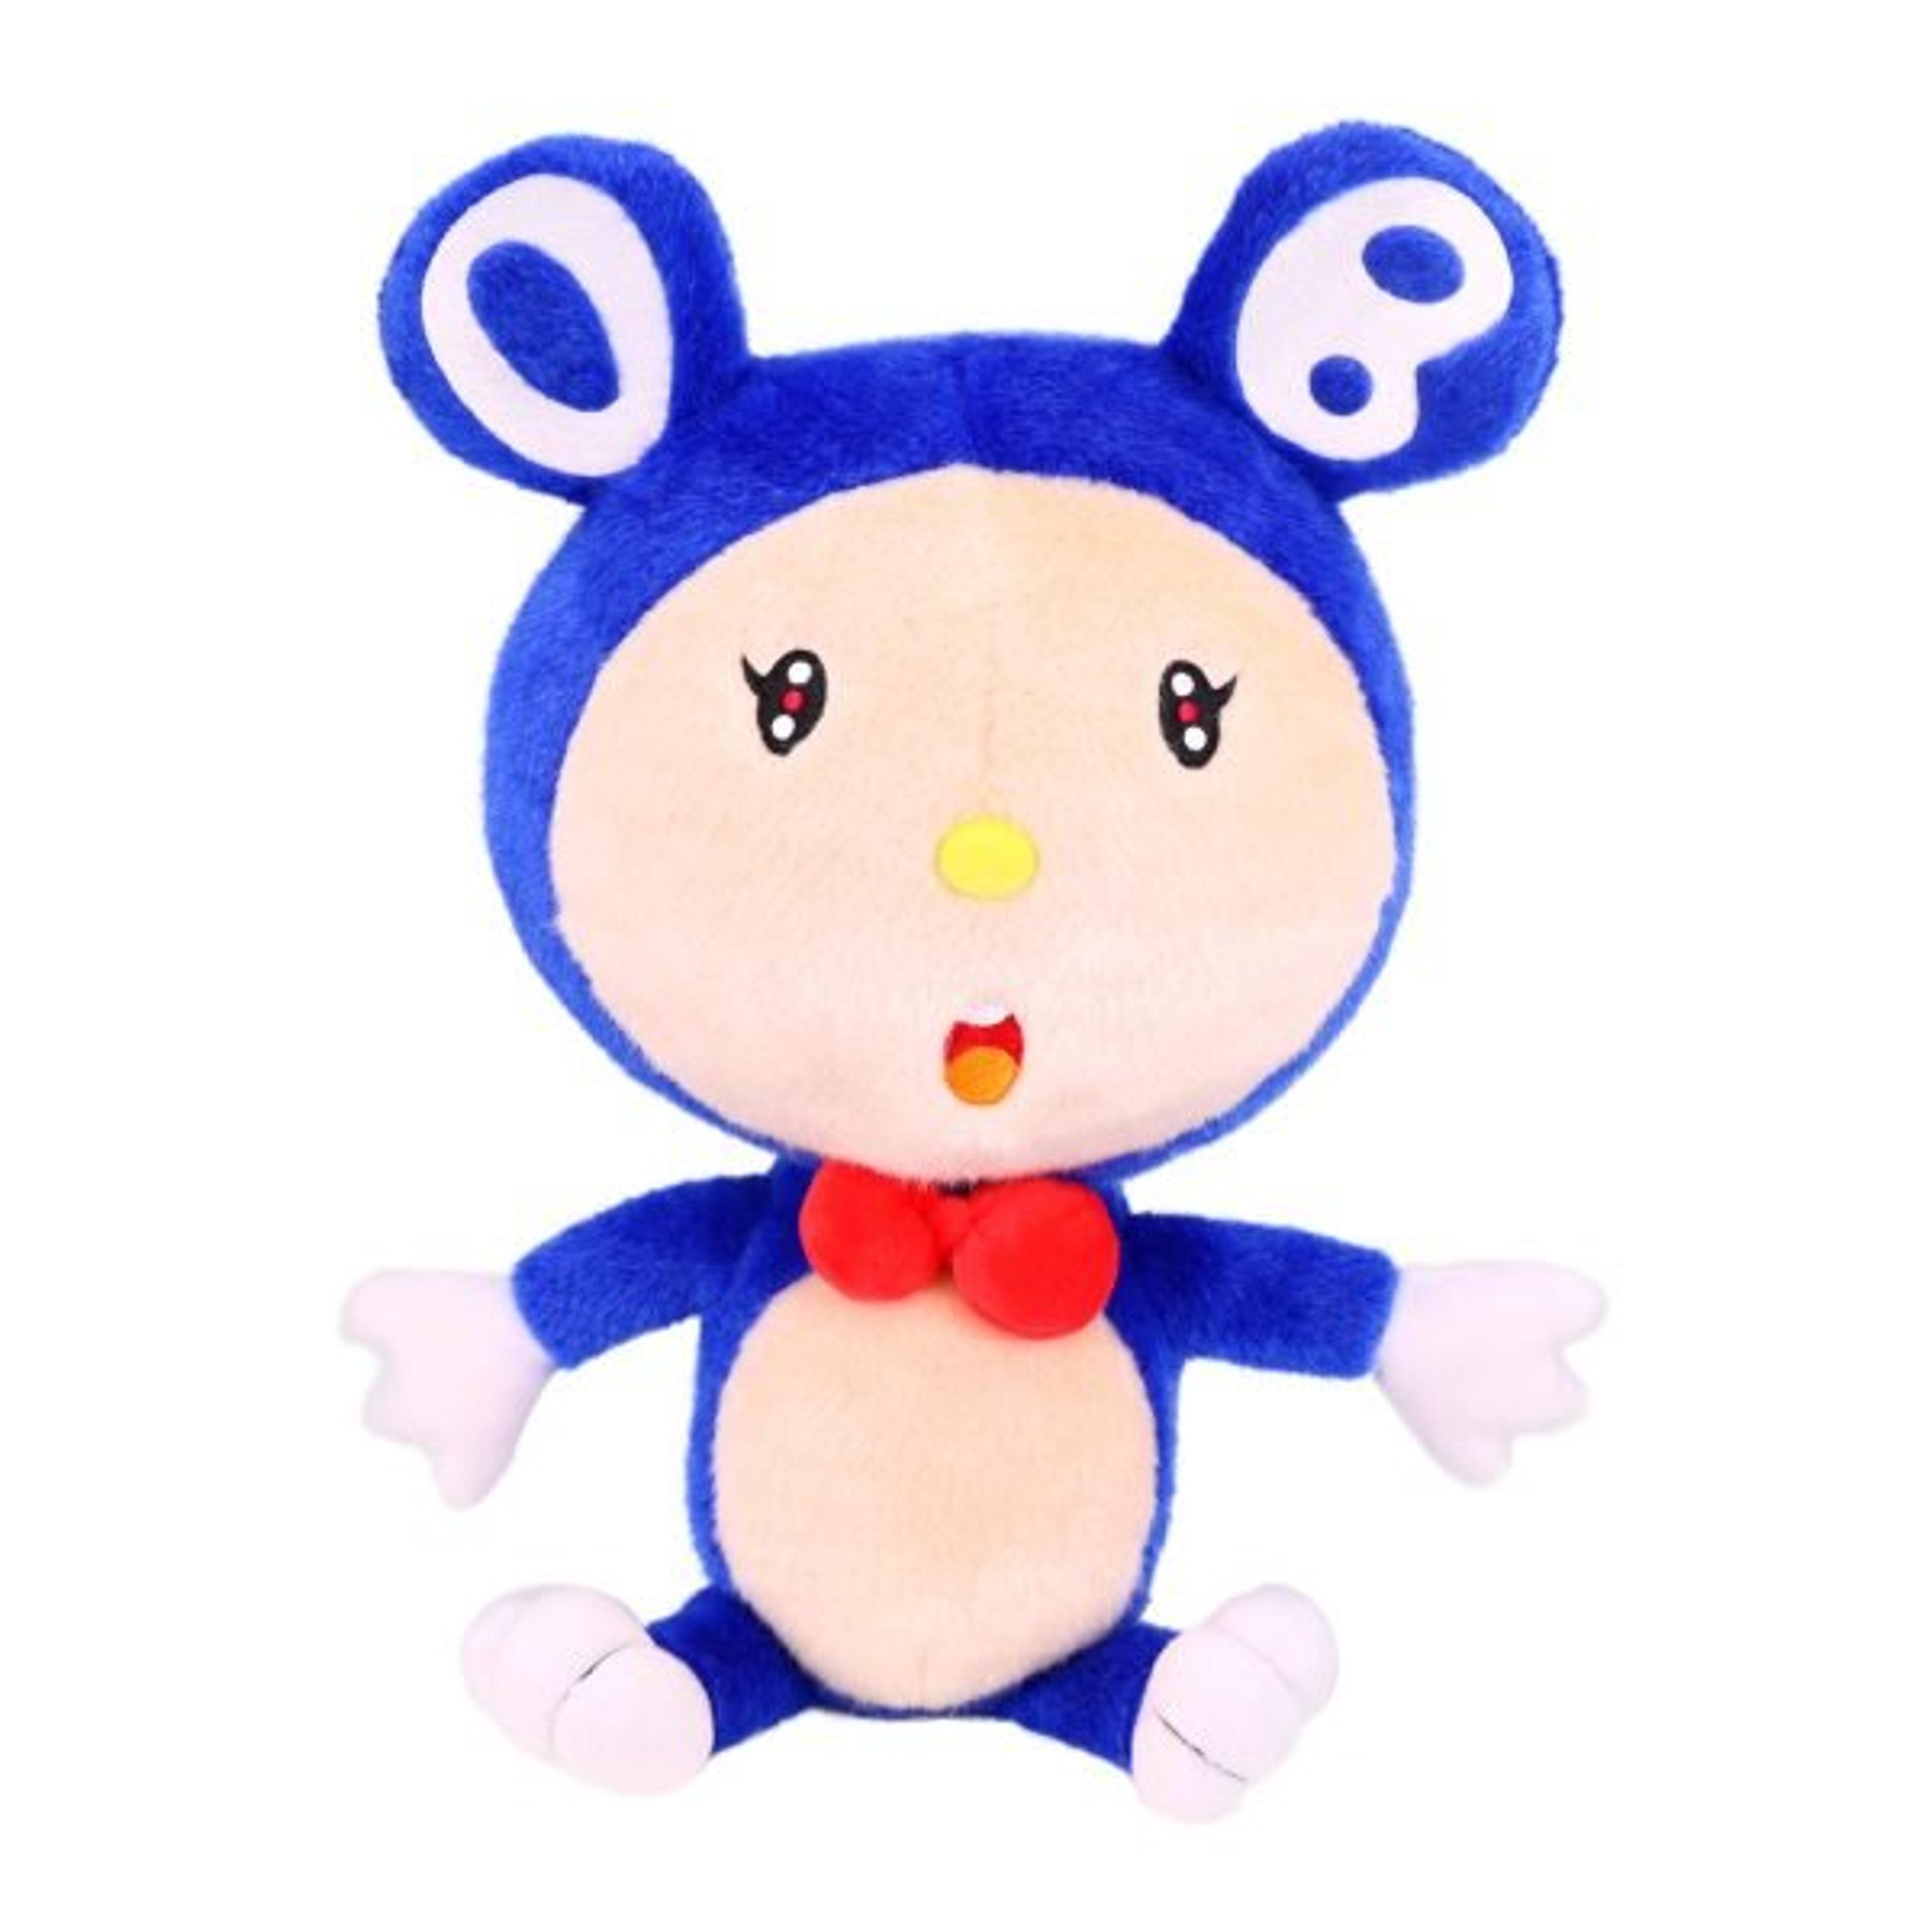 Takashi Murakami Dob plush toy doll